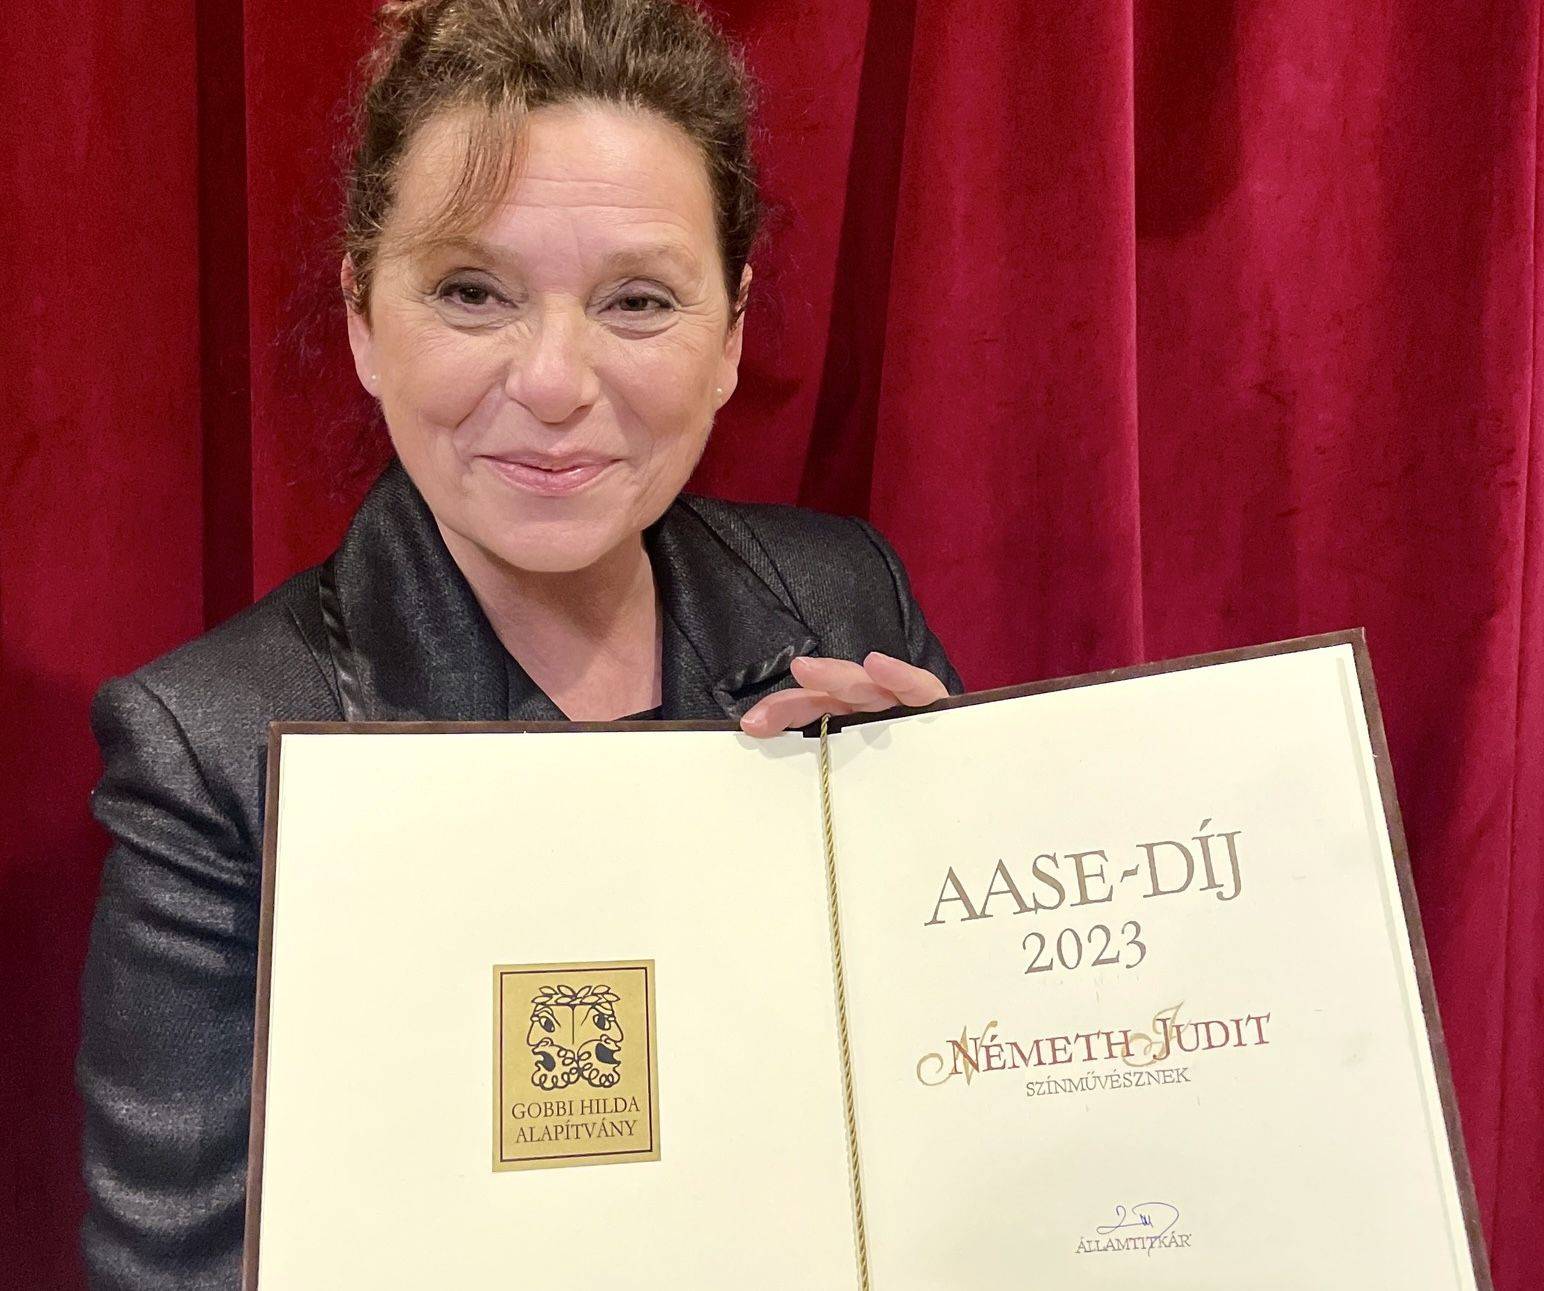 Németh Judit - Aase-díj fotó: Magyar Színházi Társaság